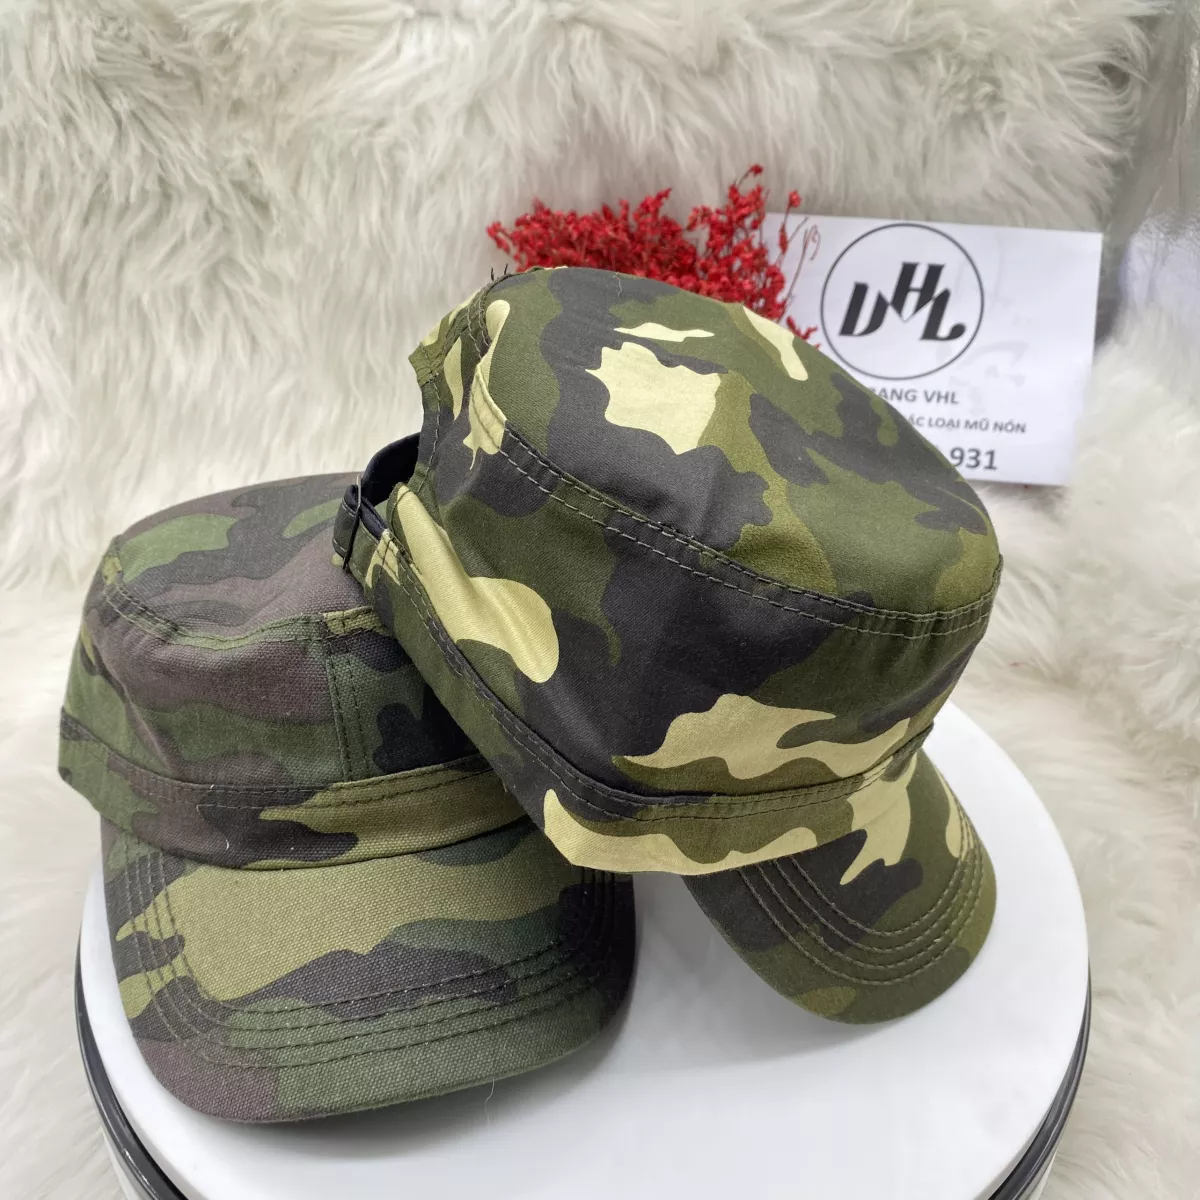 mua nón rằn ri quân đội giá sỉ có tại xưởng may ahsboutique